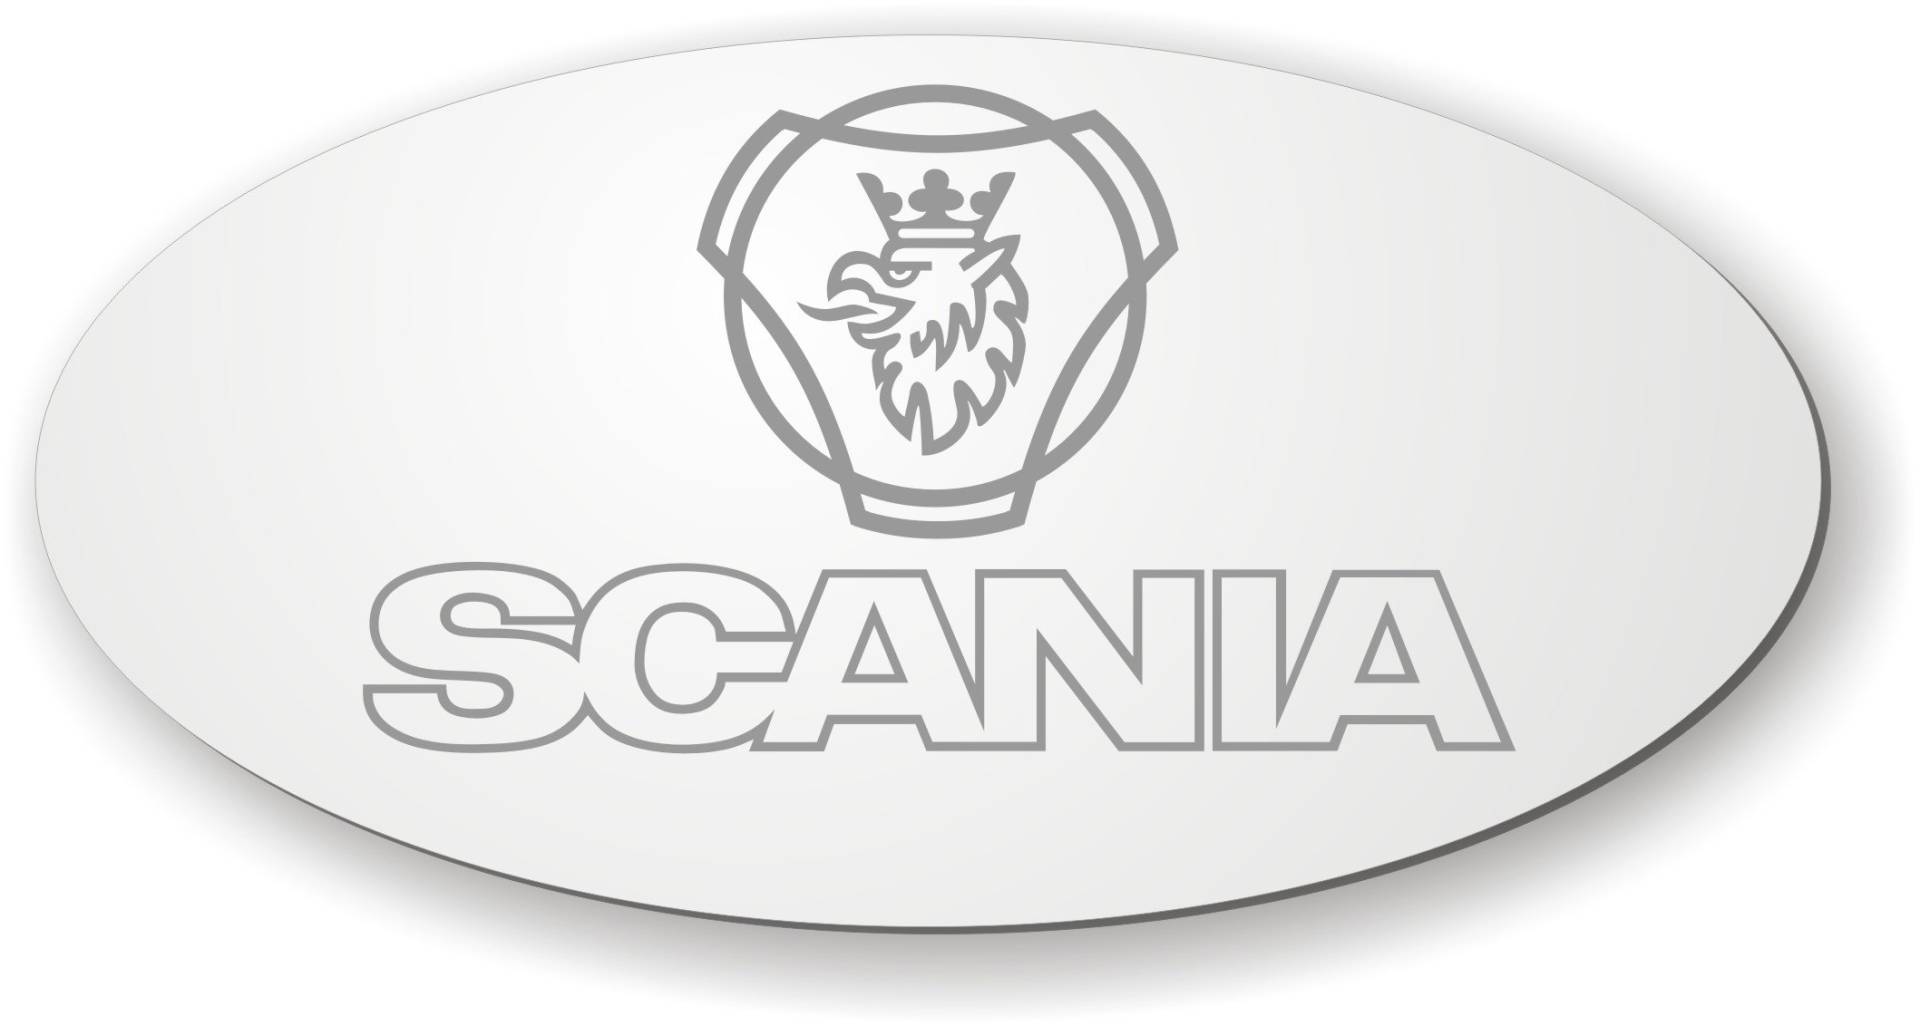 Scania Spiegel mit Logo für die Rückwand ✓ Greif Vabis Aufkleber ✓ LKW-Zubehör und Artikel für Innenausstattung ✓ Rückwandspiegel ✓ Truck accessoires für den Innenraum ✓ von Schilderfeuerwehr